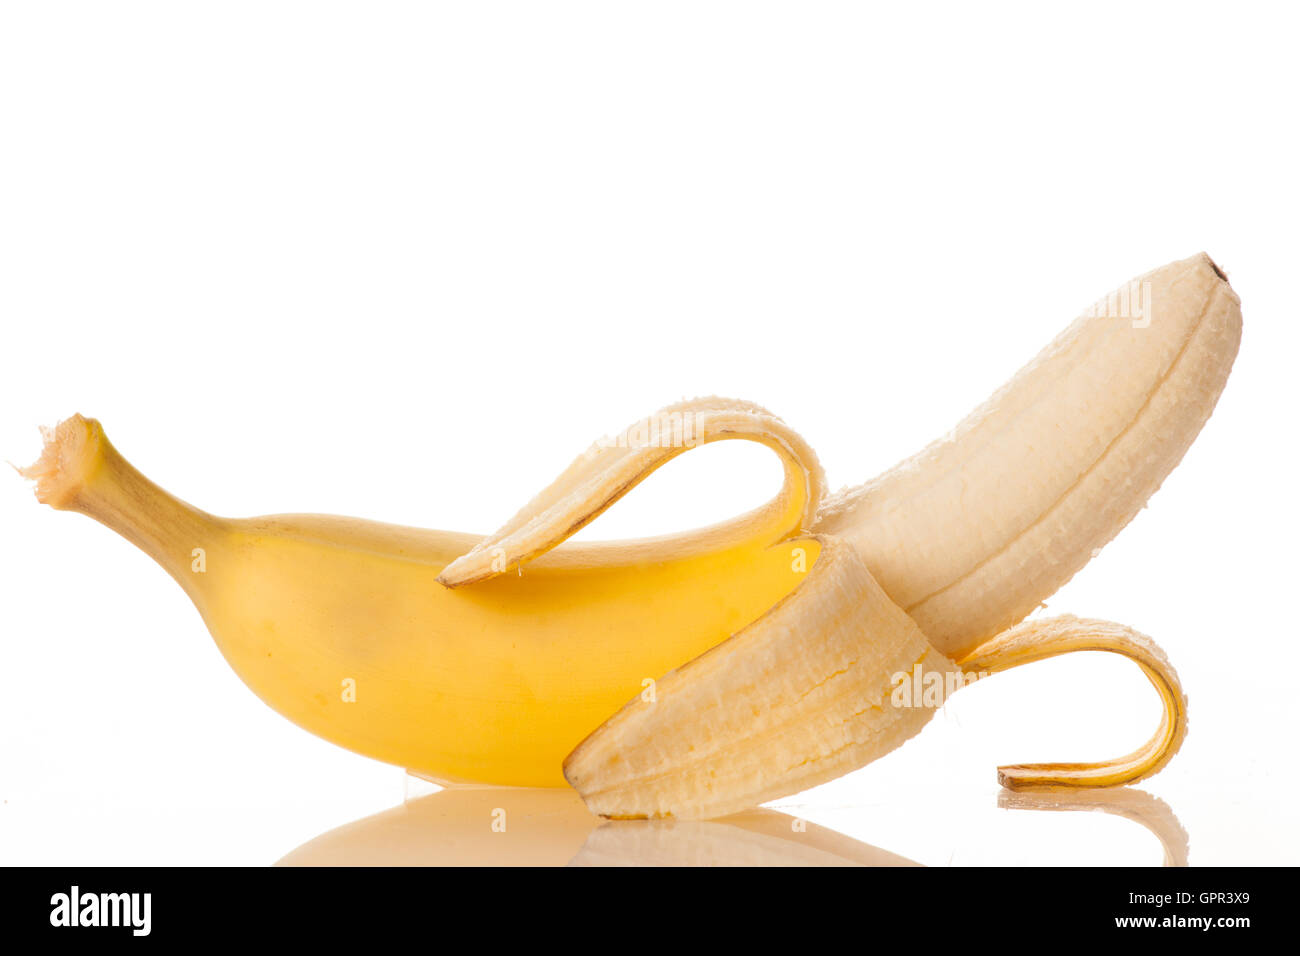 Il y pela sweet banana isolé sur fond blanc Banque D'Images